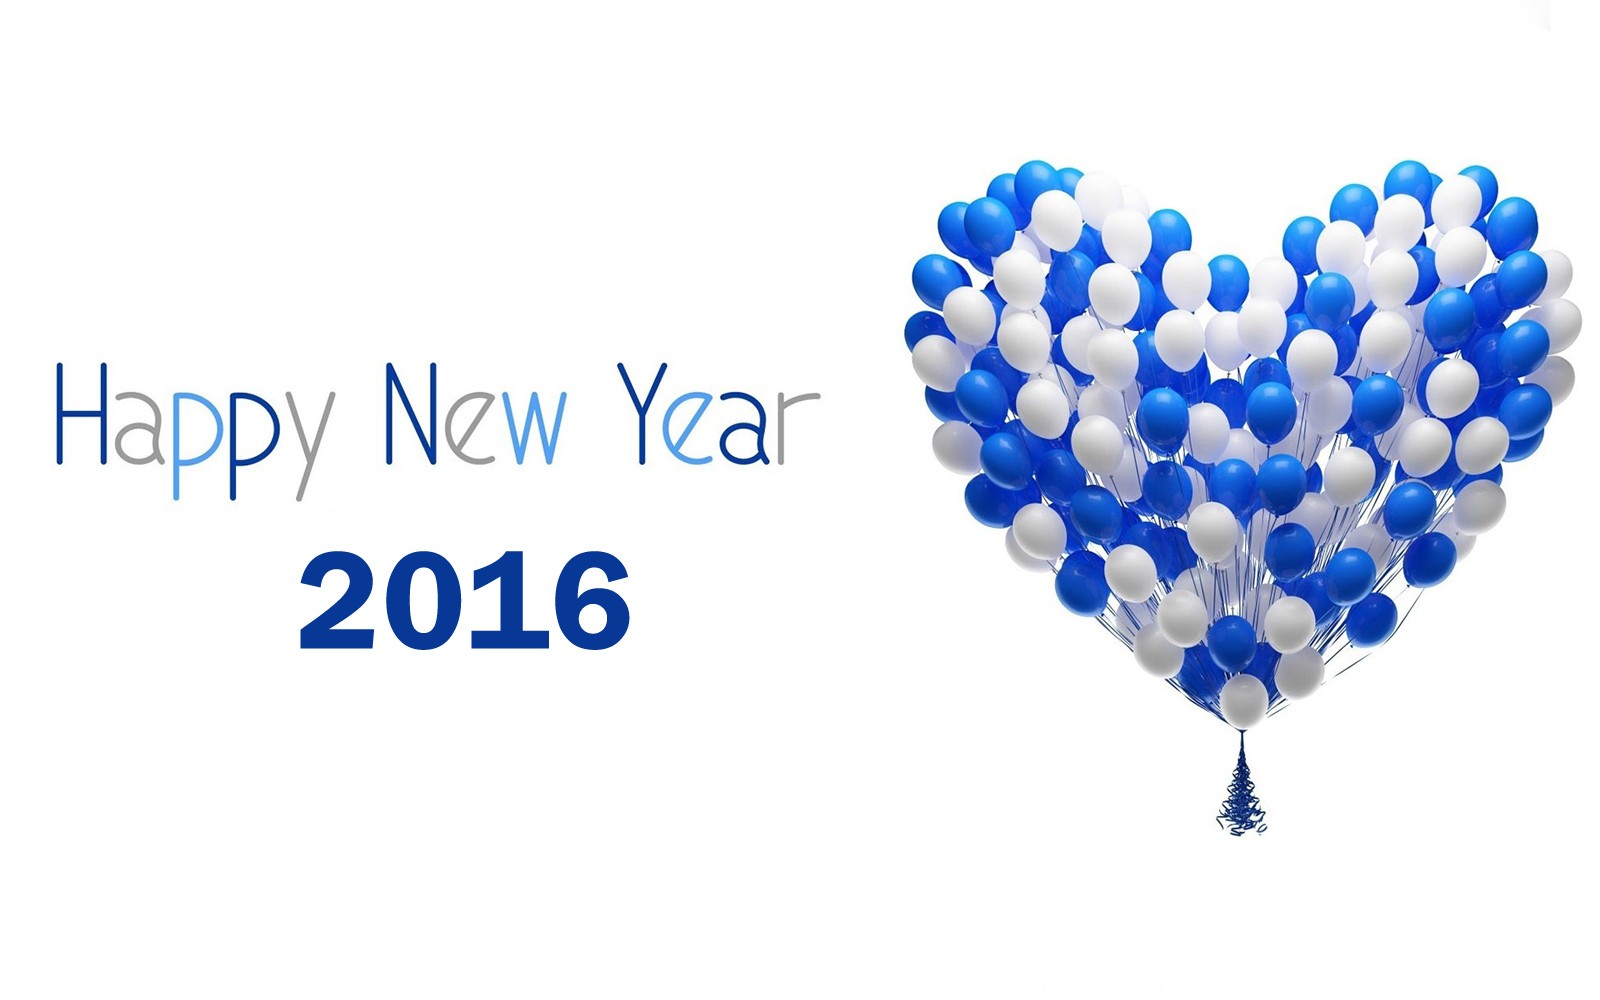 #ndrajamal: Selamat Tahun Baru 2016